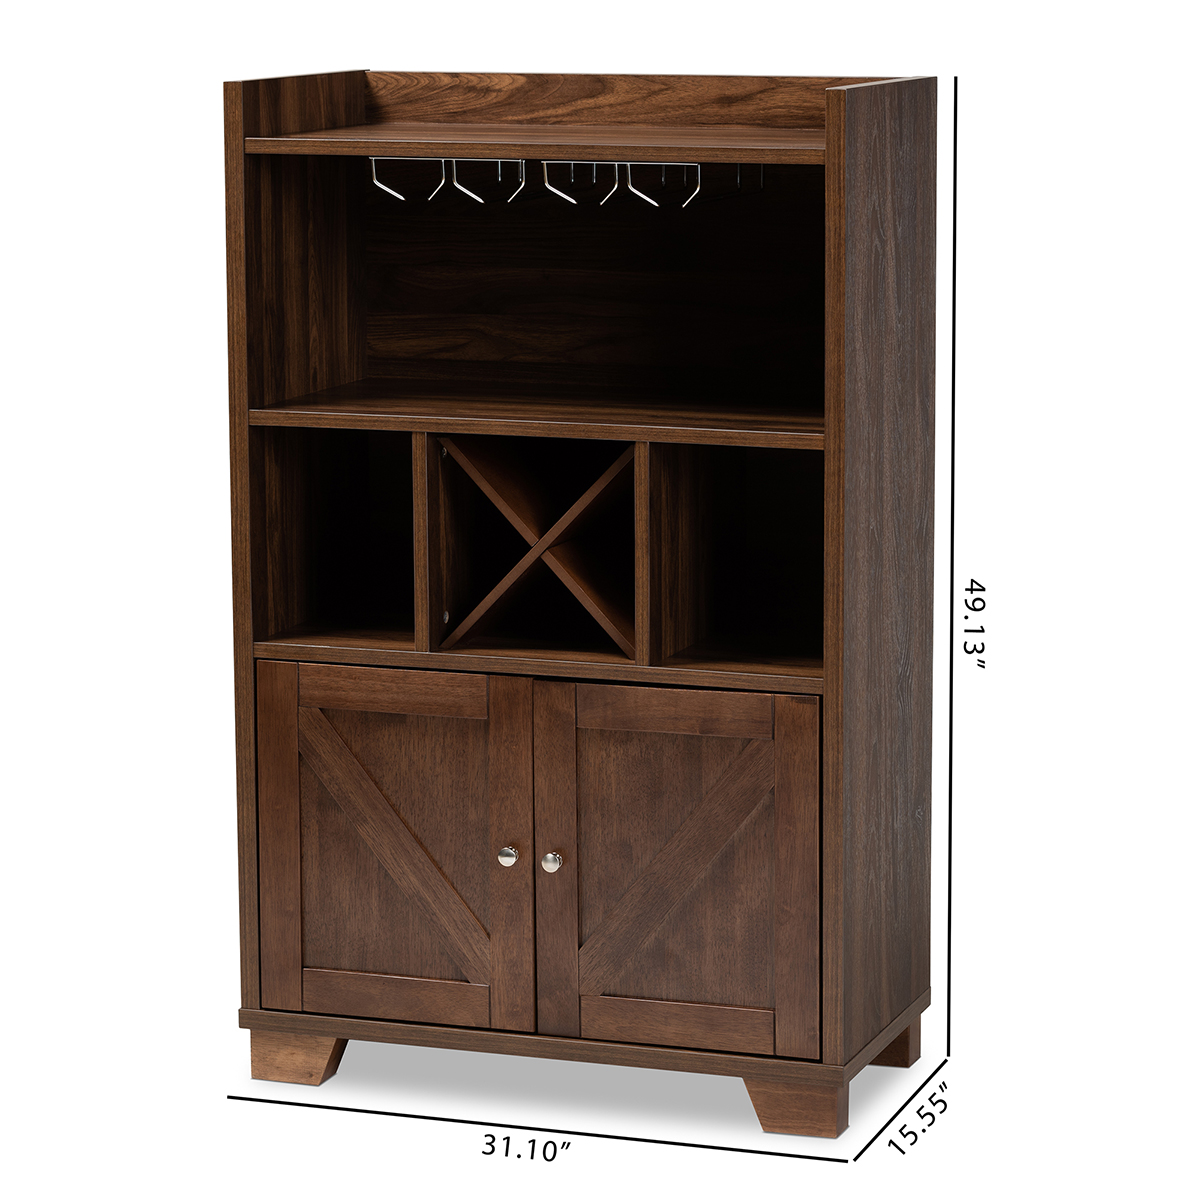 Baxton Studio Carrie Wine Storage Cabinet